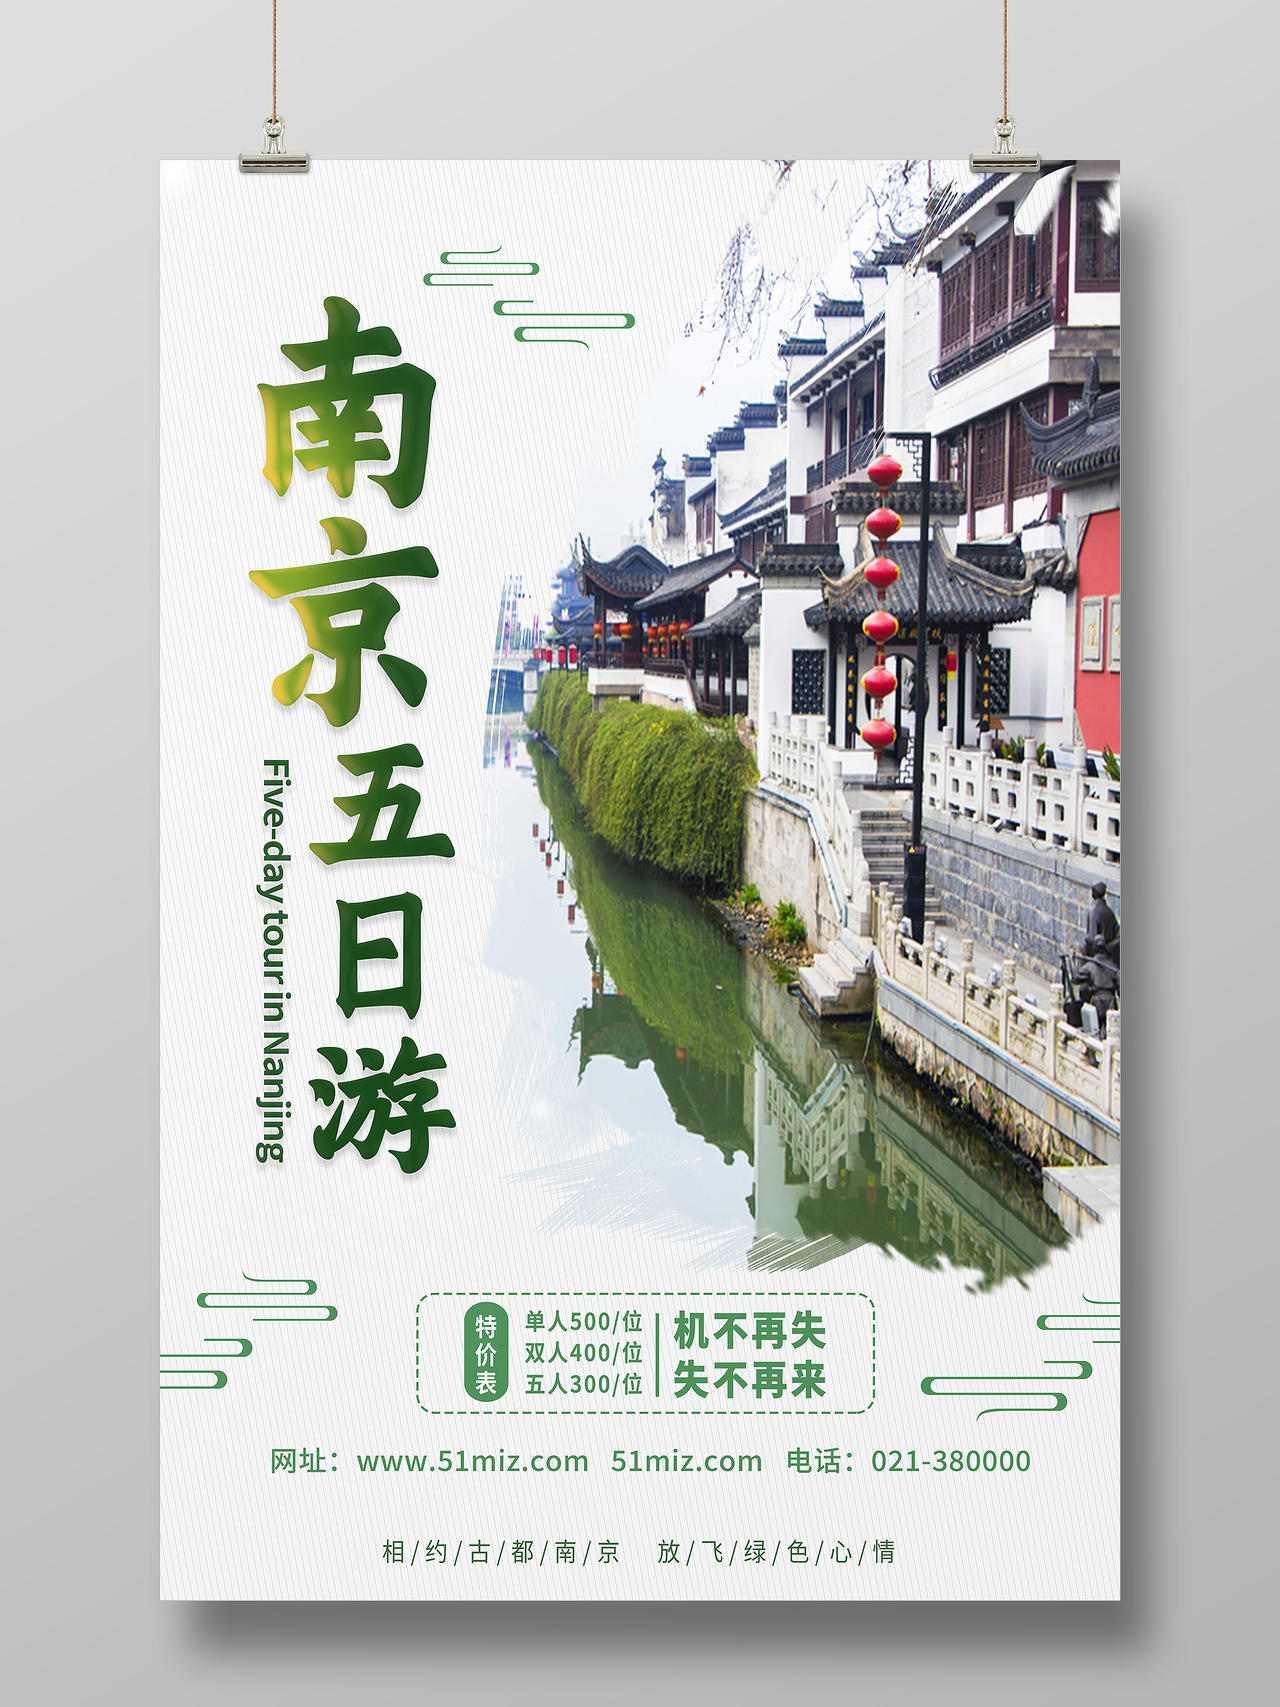 绿色简约南京五日游行业模板旅游海报